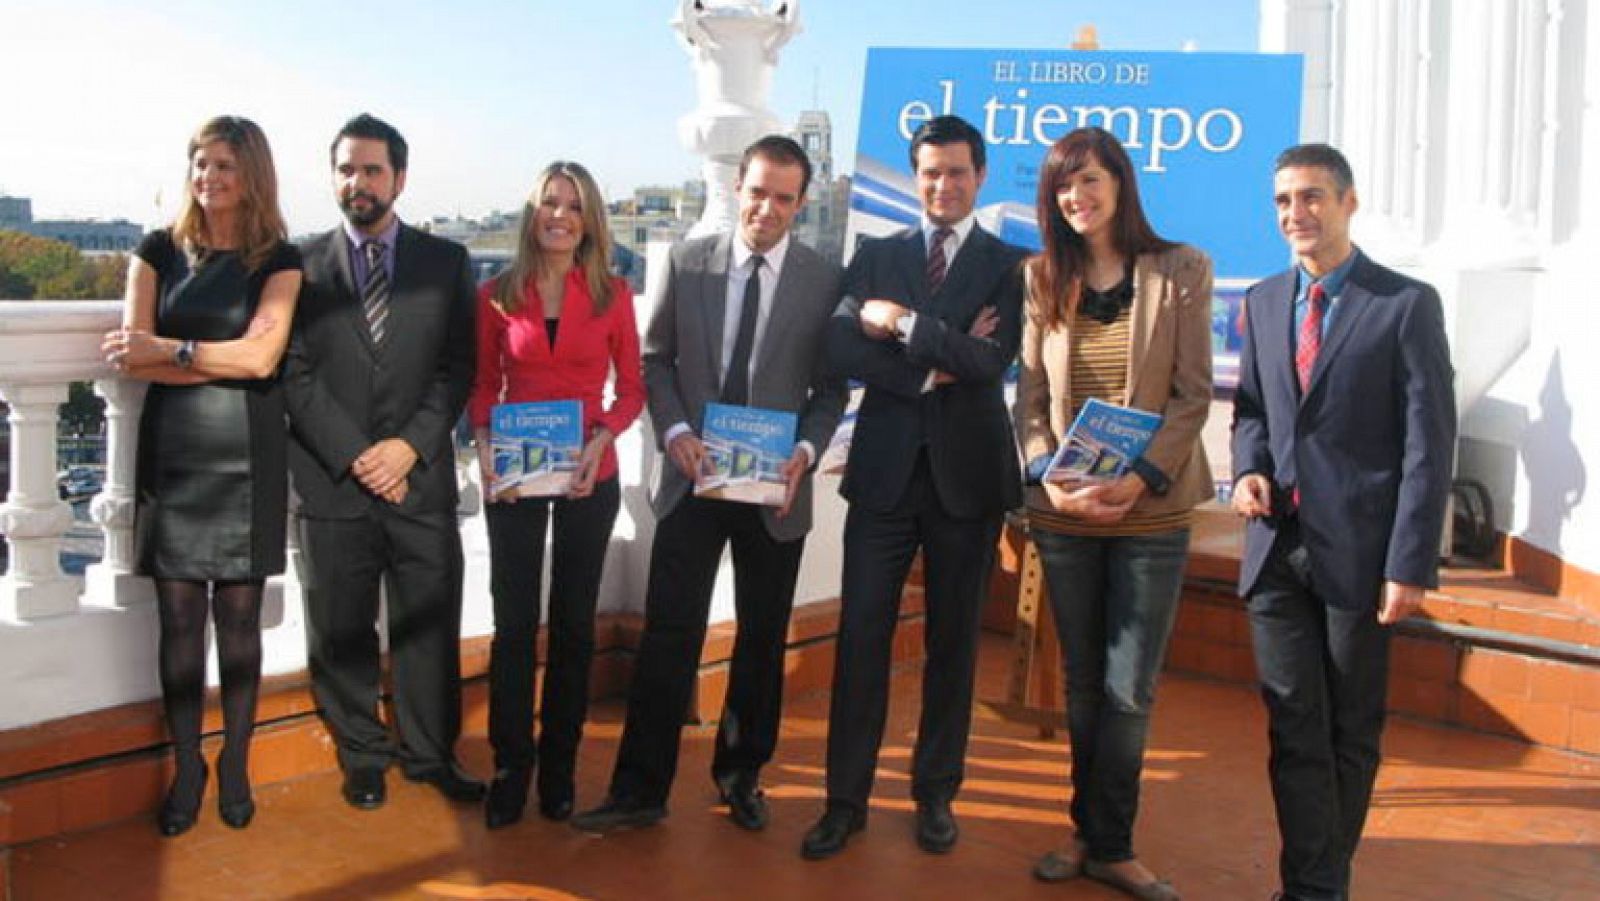 El equipo de meteorología de Televisión Española presenta "El libro de El tiempo"